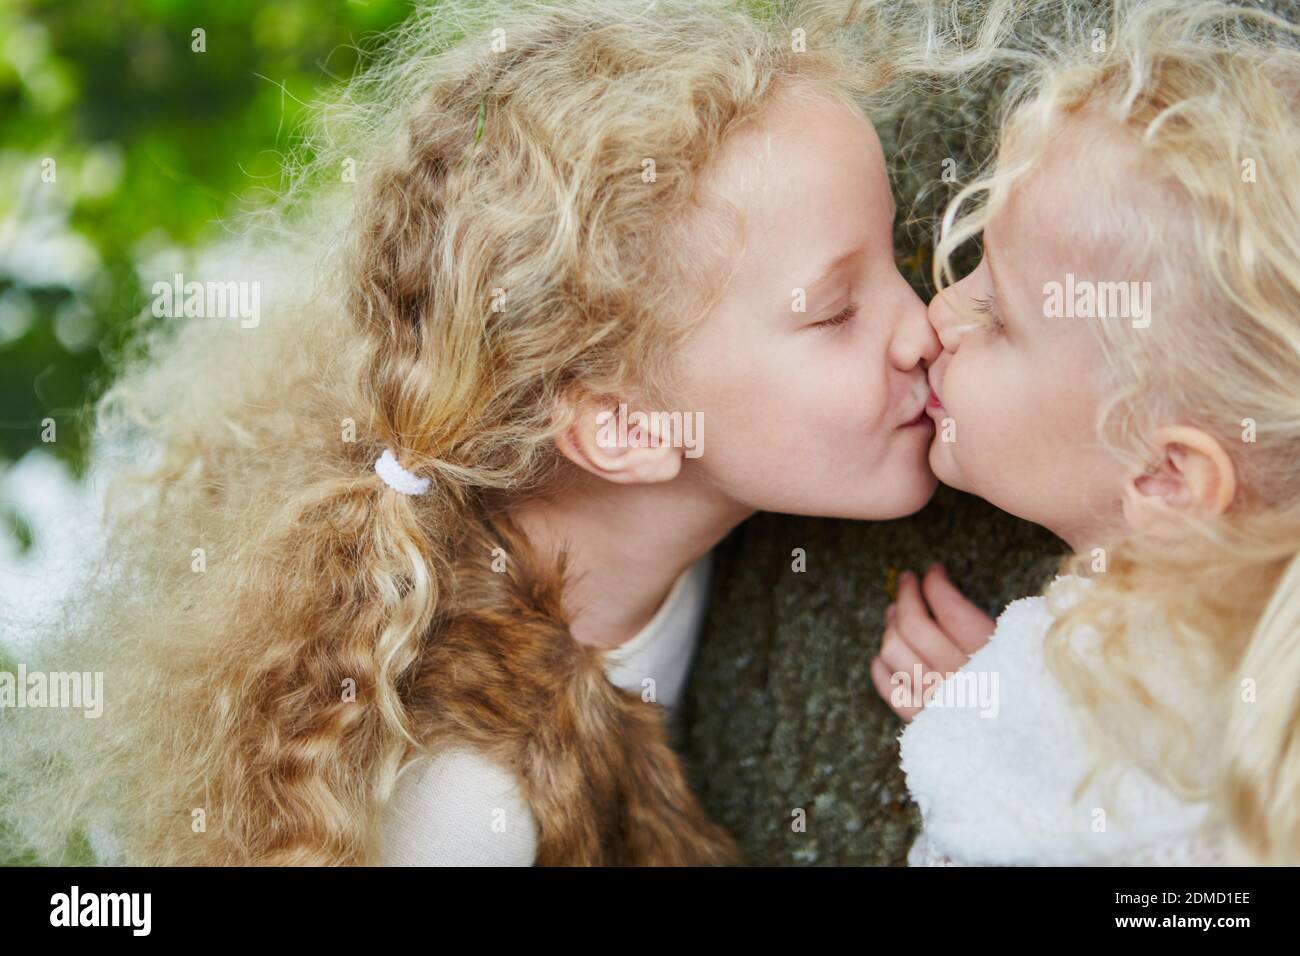 Zwei kleine Mädchen als Geschwister küssen sich liebevoll Photo Stock -  Alamy